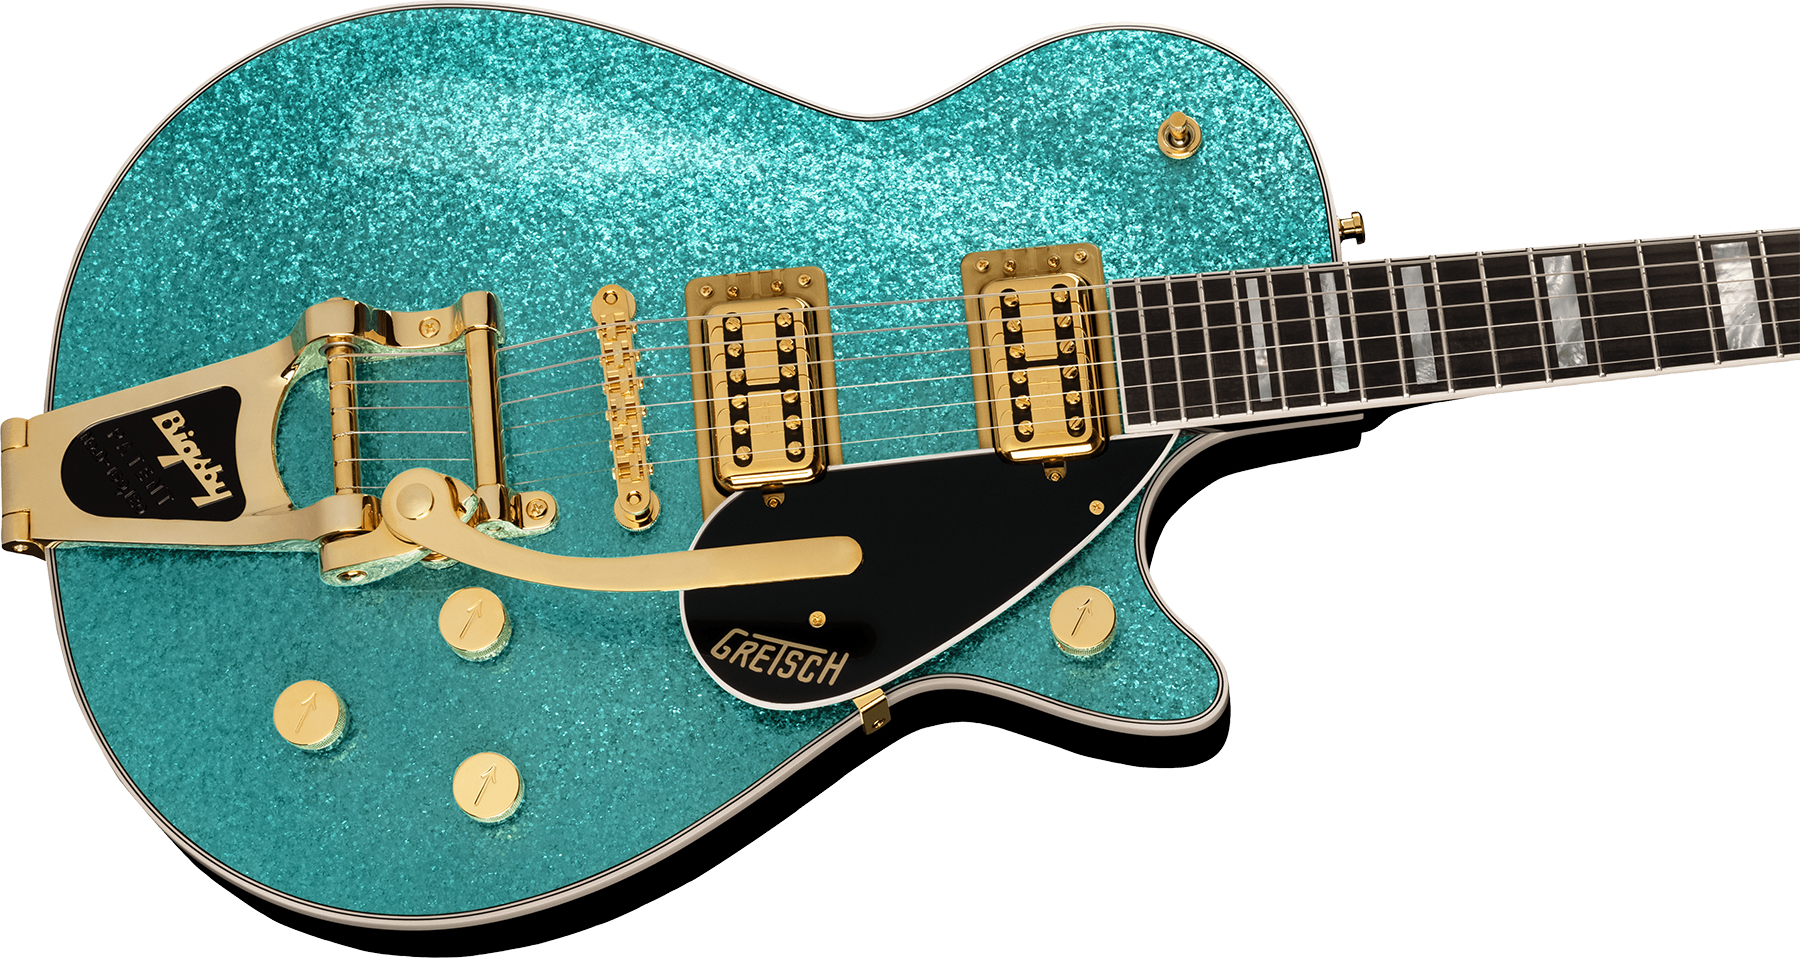 Gretsch G6229tg Jet Bt Players Edition Pro Jap 2h Trem Bigsby Rw - Ocean Turquoise Sparkle - Enkel gesneden elektrische gitaar - Variation 2